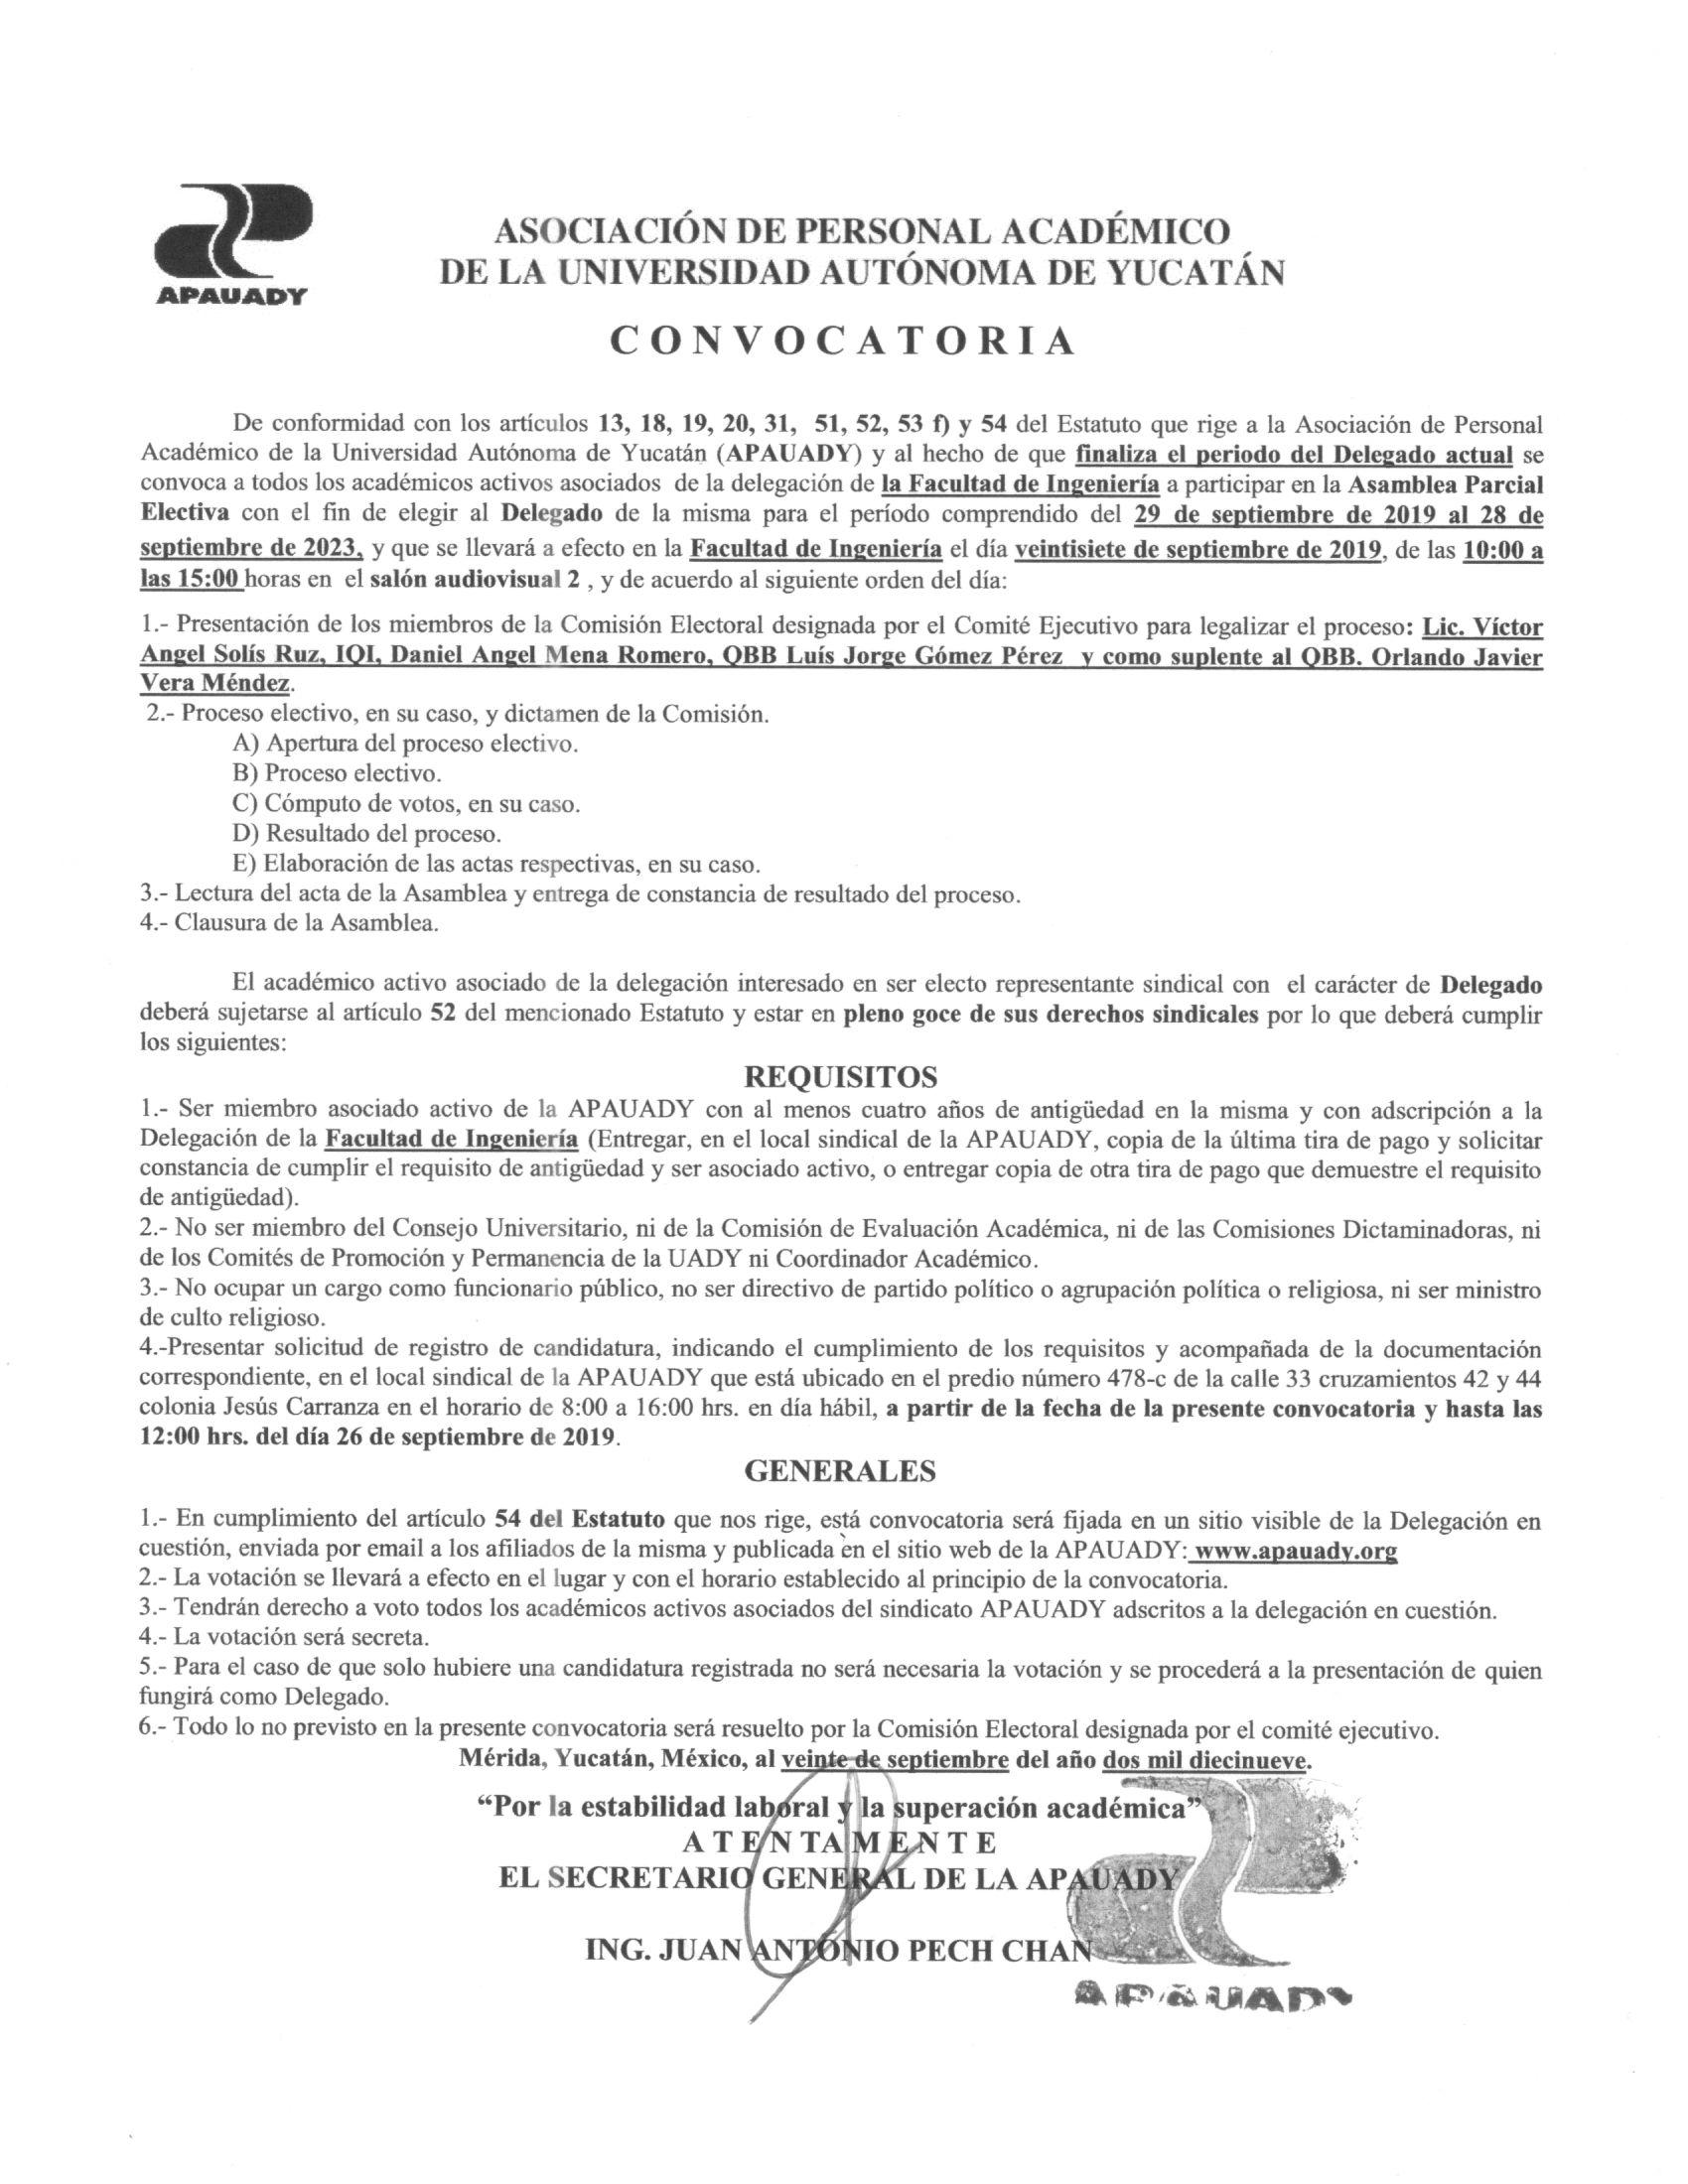 Featured image for “Convocatoria Elecciones para Delegado de la Facultad de Ingeniería”